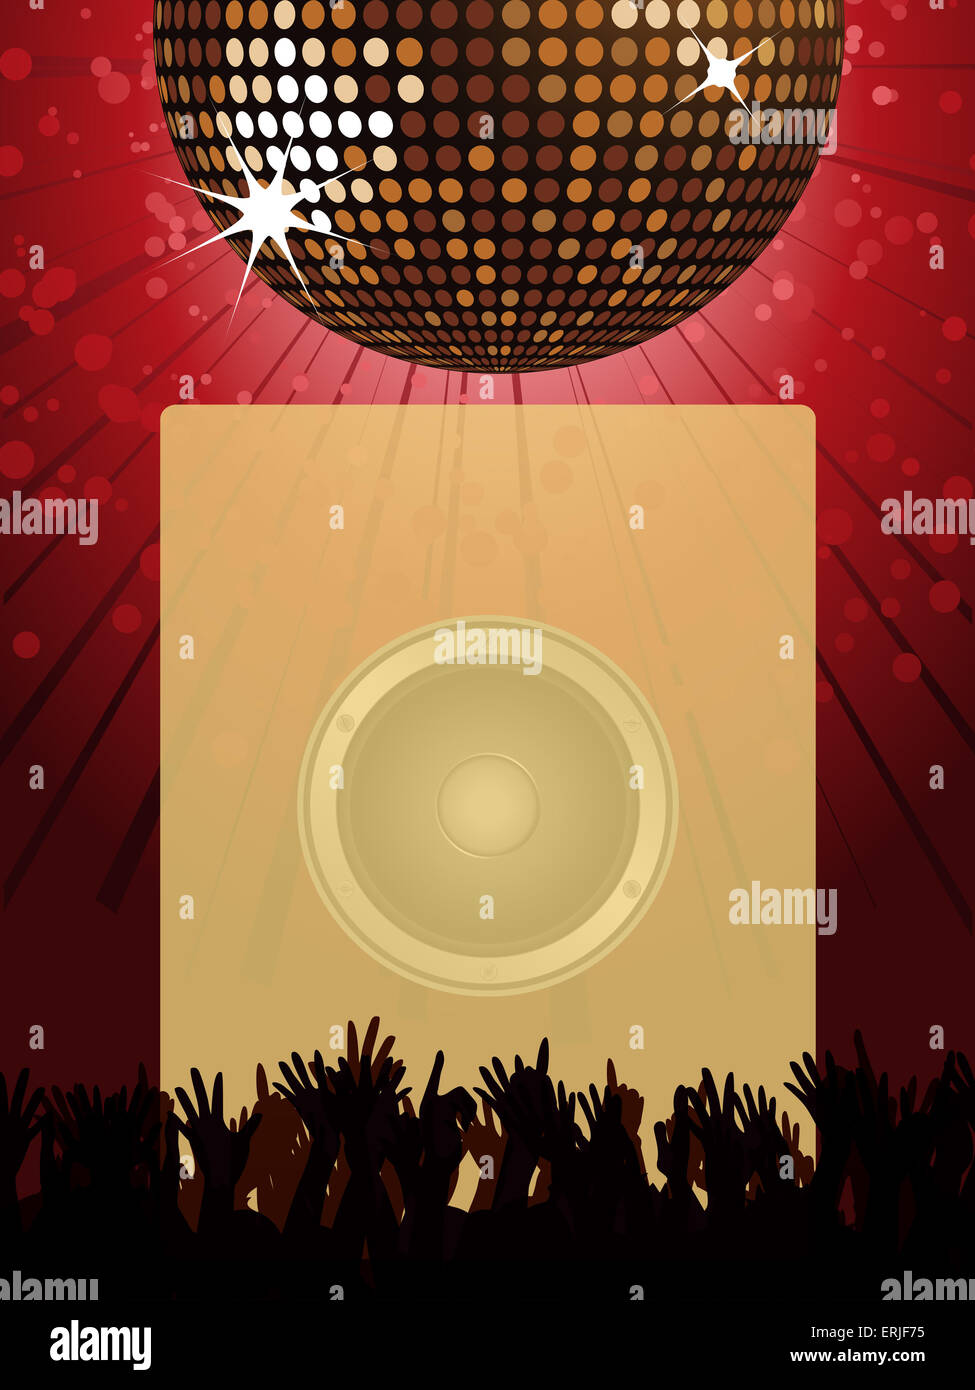 Portrait Disco Party Poster avec boule disco le président foule et bord pour vos messages Banque D'Images